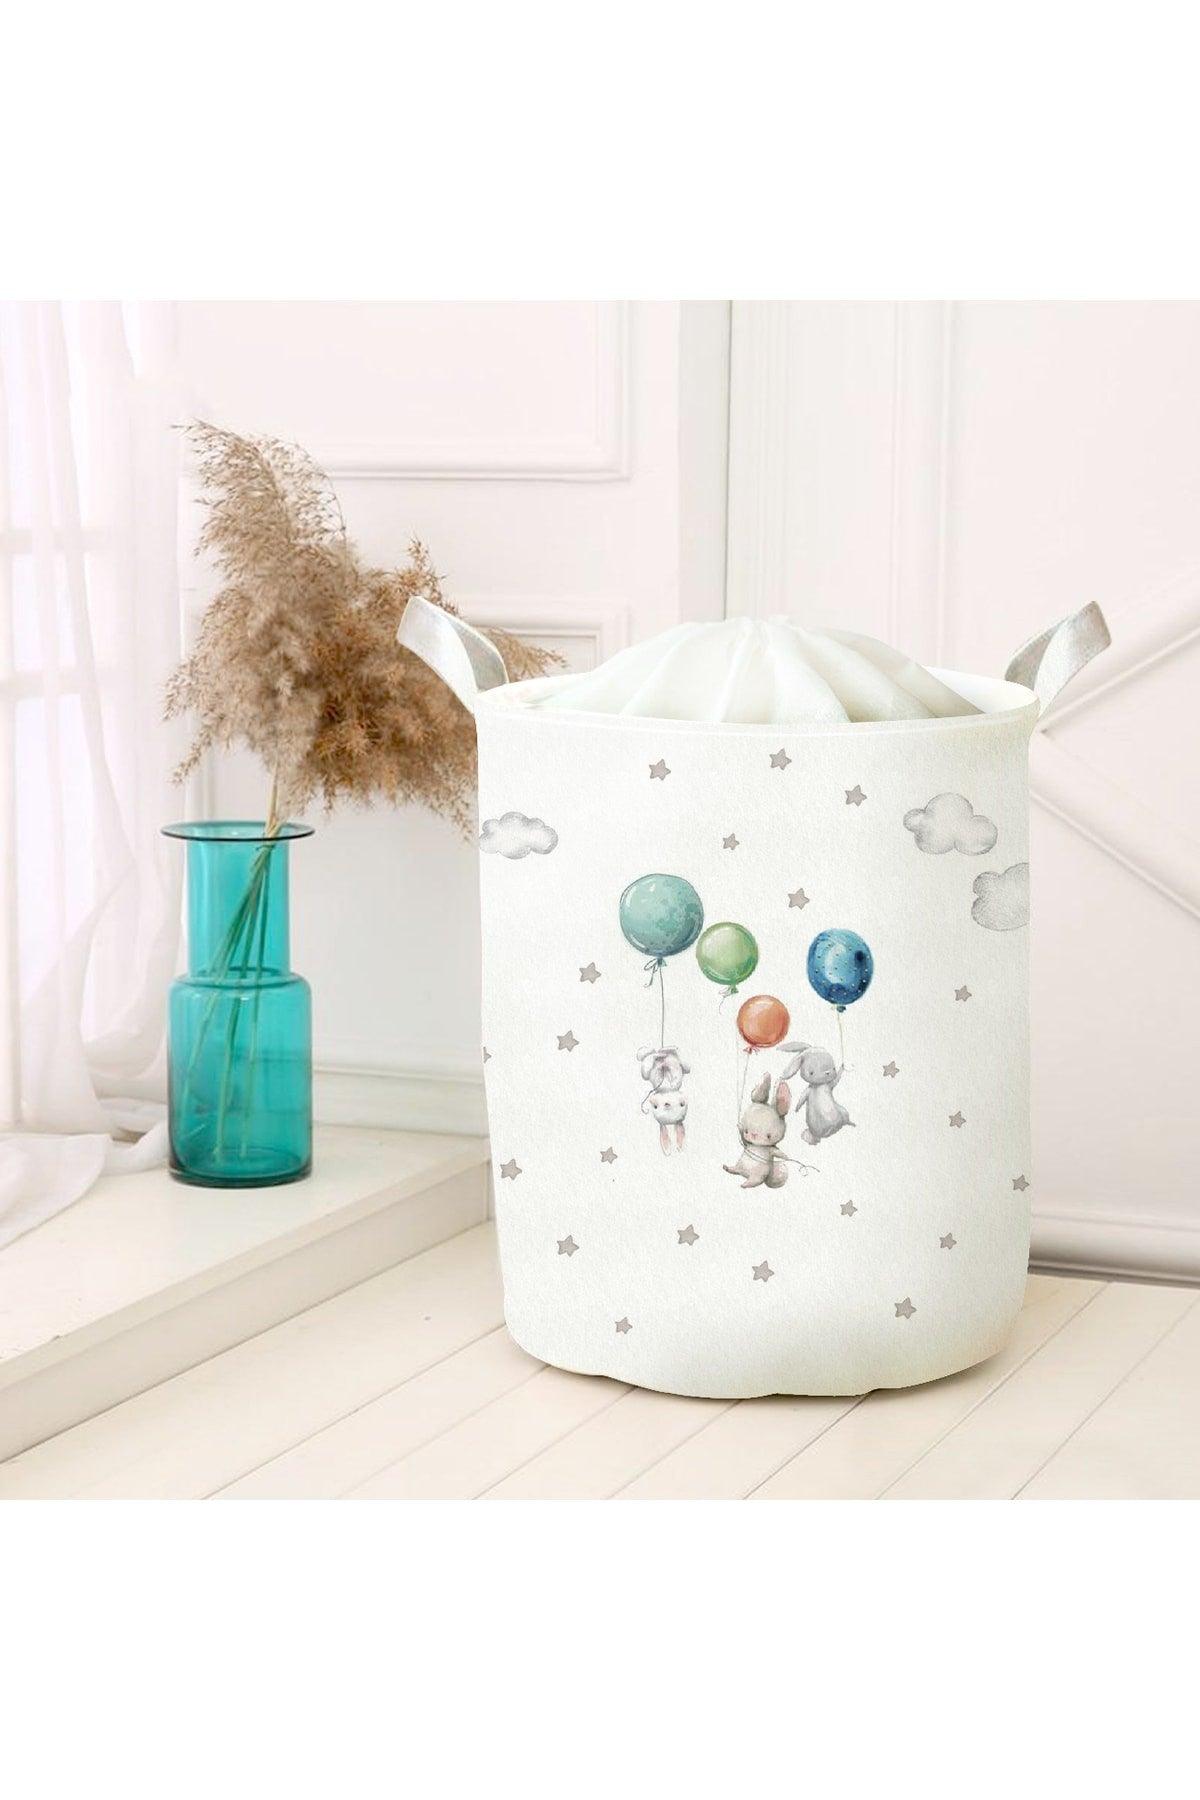 Foldable Felt Multi-Purpose Toy Storage Box Dirty Laundry Picnic Basket Gift Basket - Swordslife